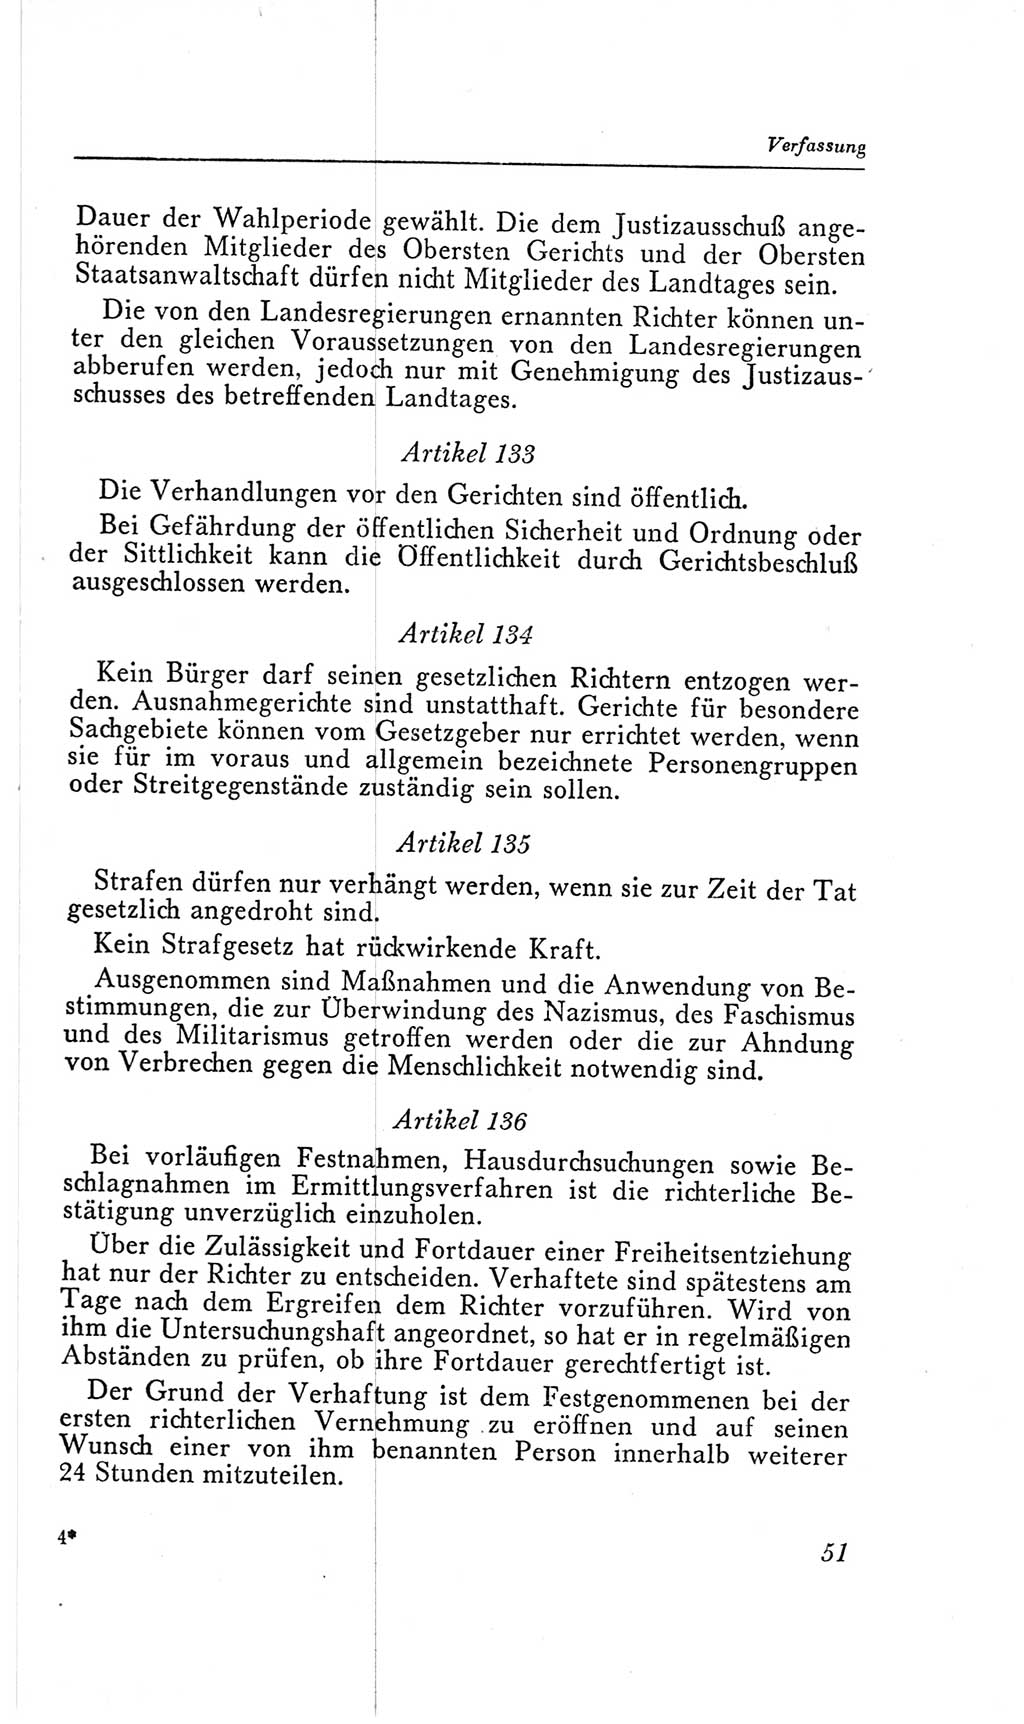 Handbuch der Volkskammer (VK) der Deutschen Demokratischen Republik (DDR), 2. Wahlperiode 1954-1958, Seite 51 (Hdb. VK. DDR, 2. WP. 1954-1958, S. 51)